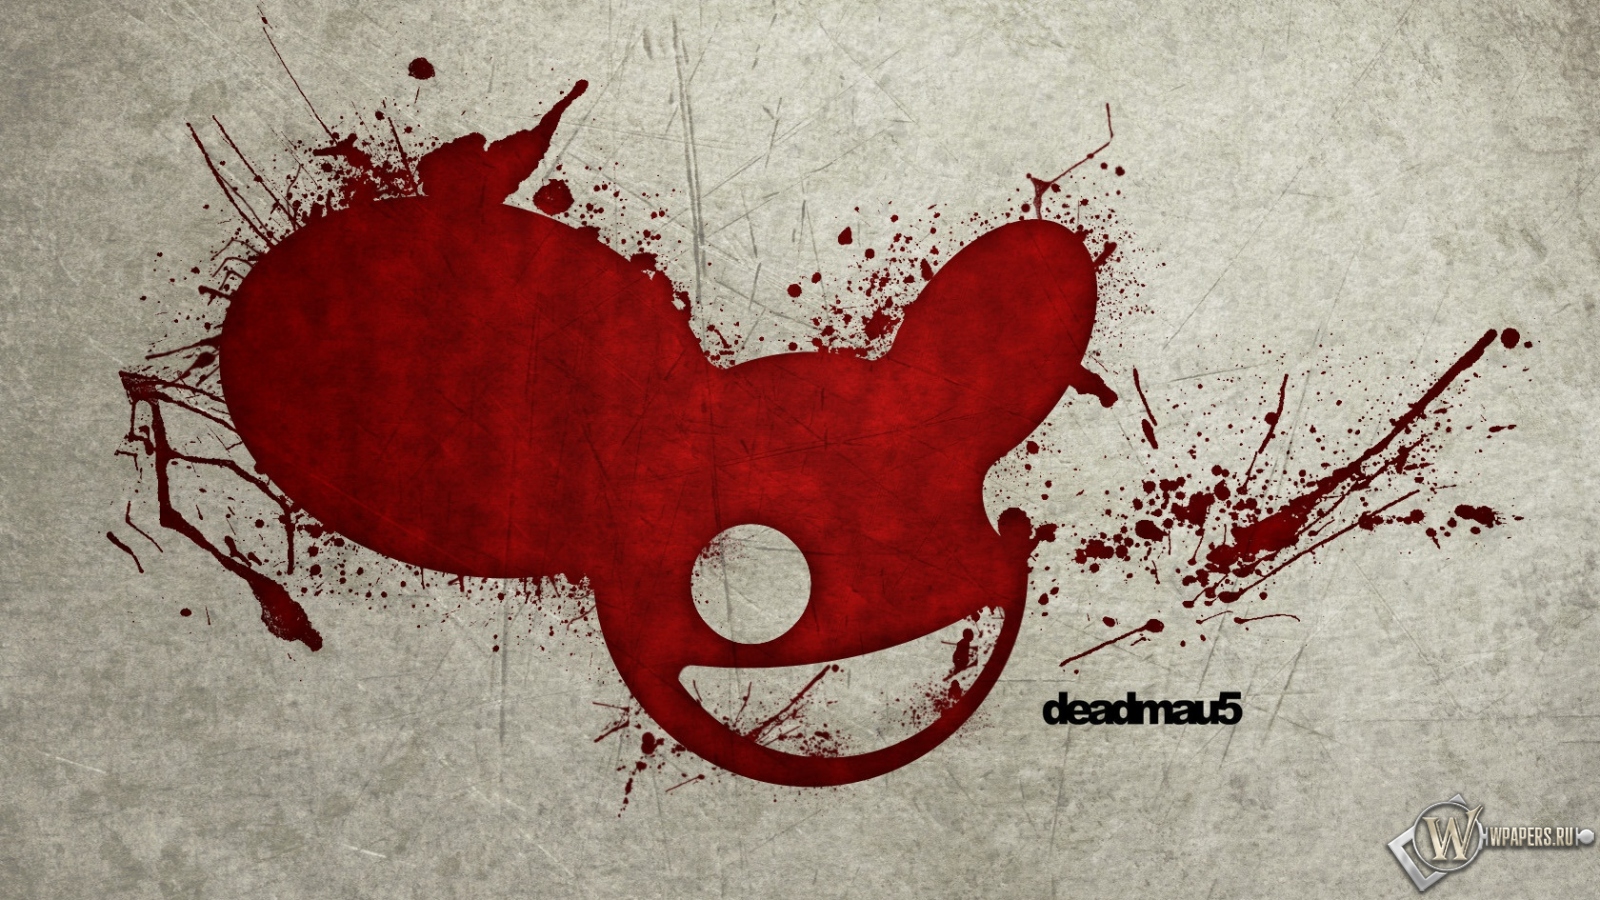 Deadmau5 1600x900